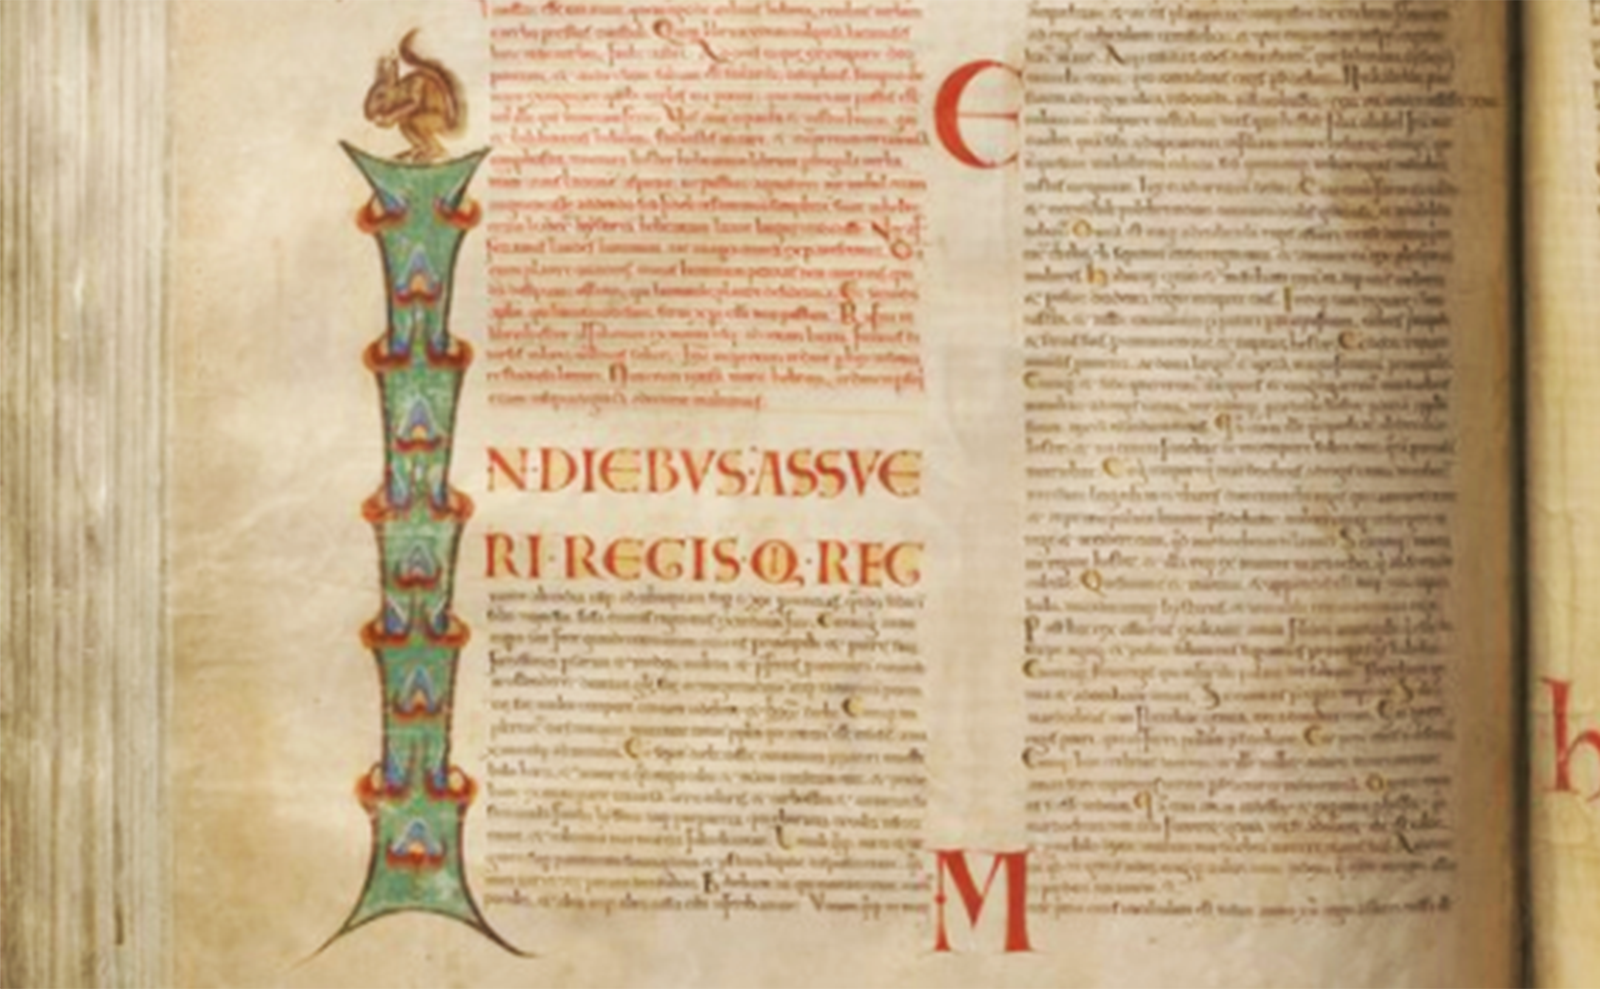 una página iluminada en el codex gigas